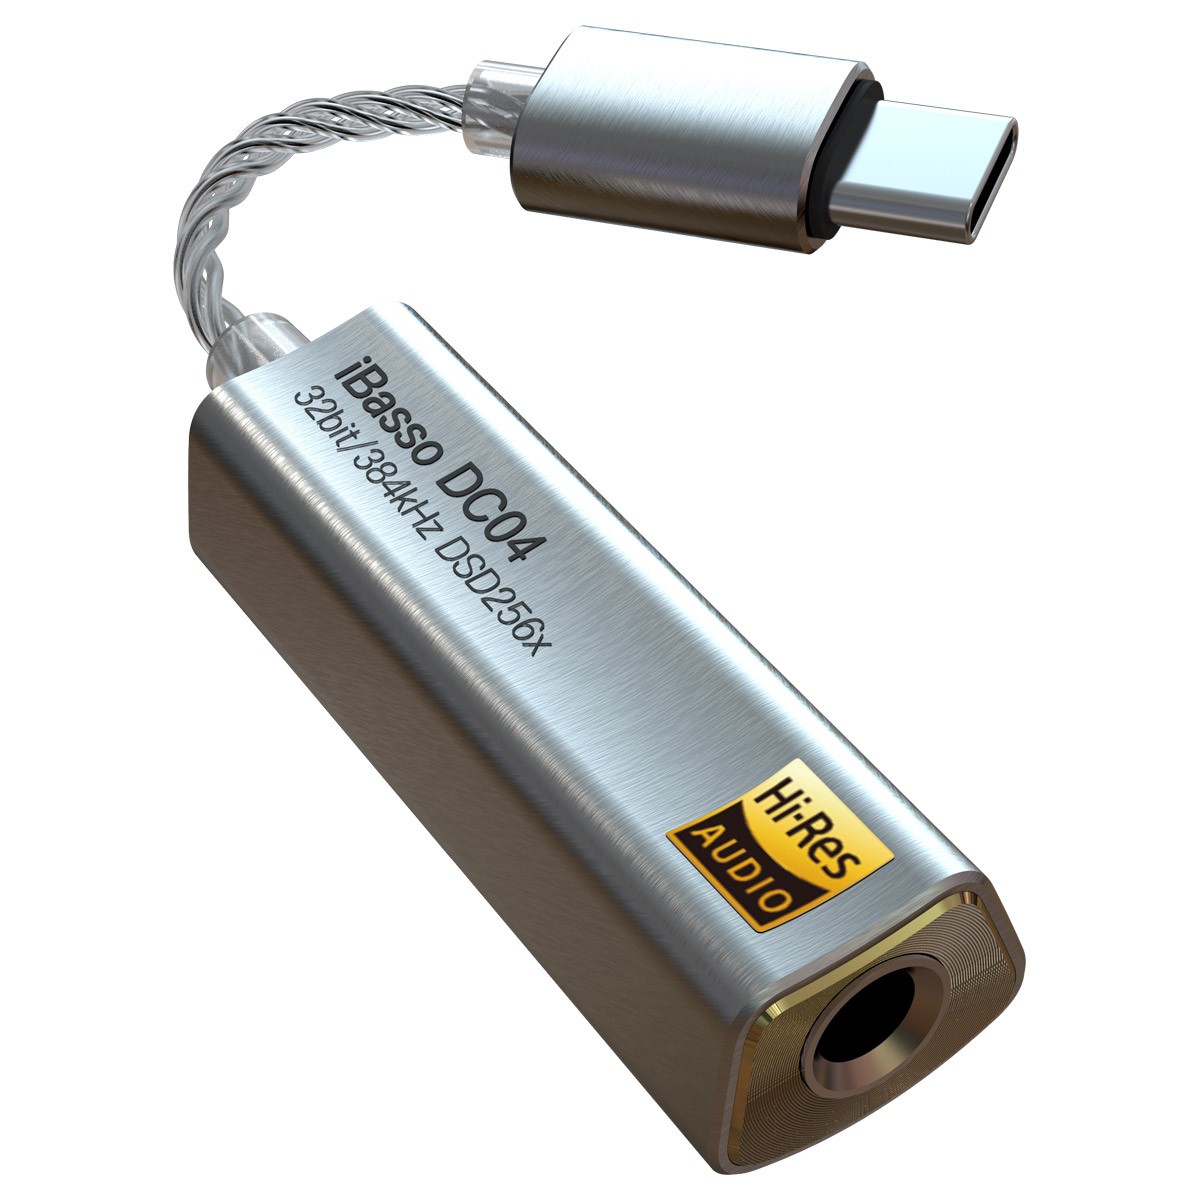 [GRADE A] IBASSO DC04 Adaptateur Amplificateur Casque DAC Symétrique USB-C Hi-Res 2x CS43131 32bit 384kHz DSD256 Argent